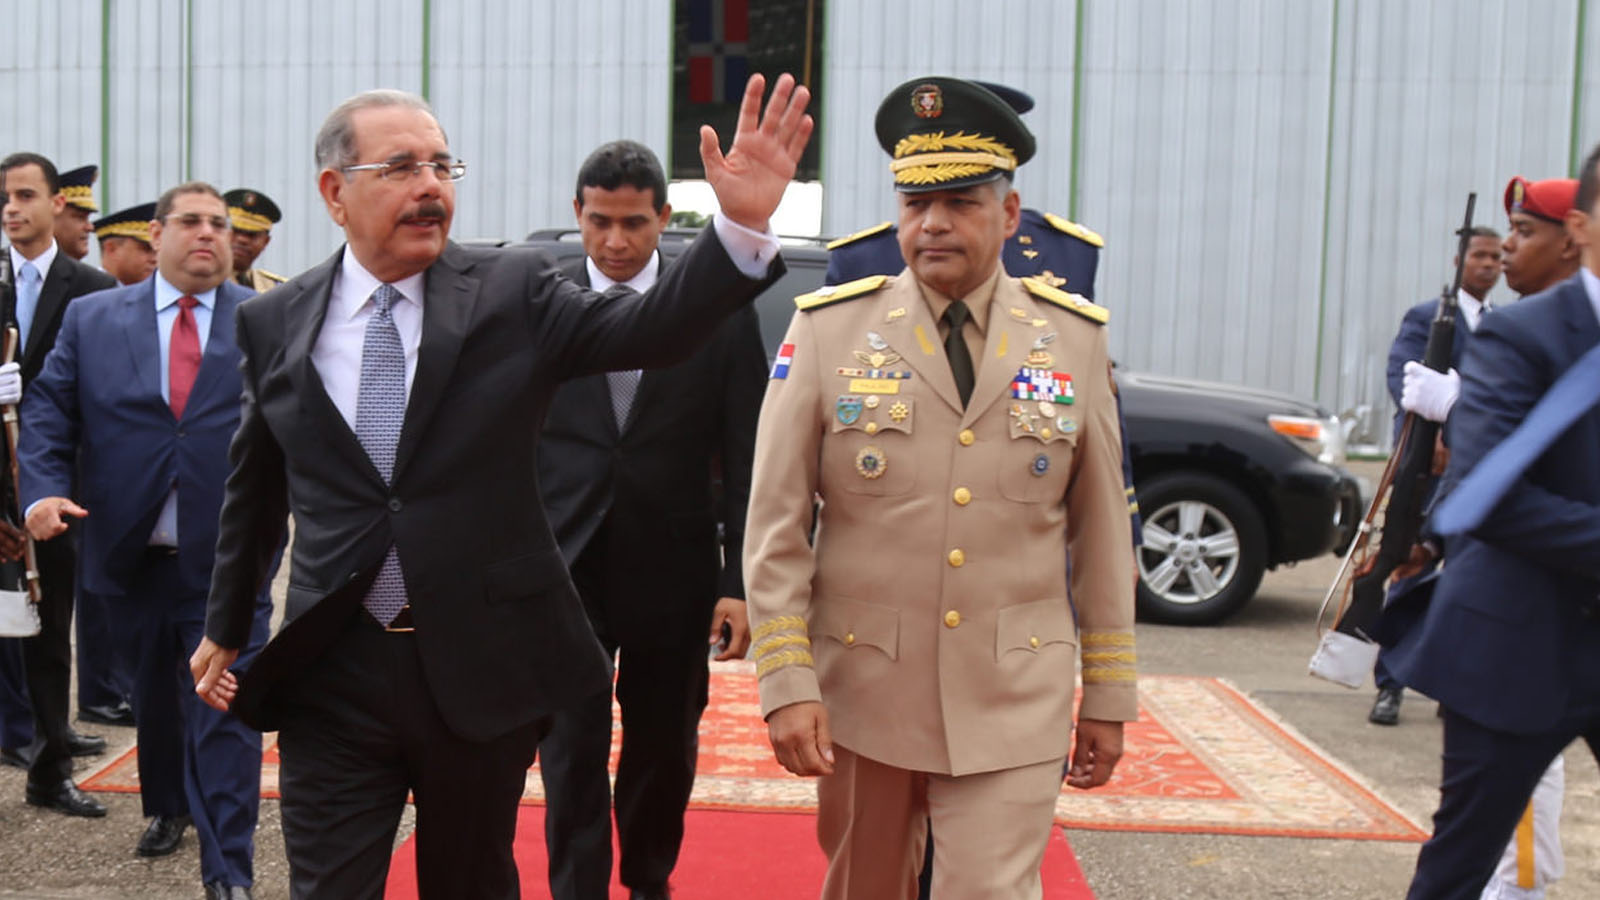 REPÚBLICA DOMINICANA: Presidente Danilo Medina saldrá mañana hacia Guatemala. Participará en LIII Reunión de Jefes de Estado y de Gobierno del SICA